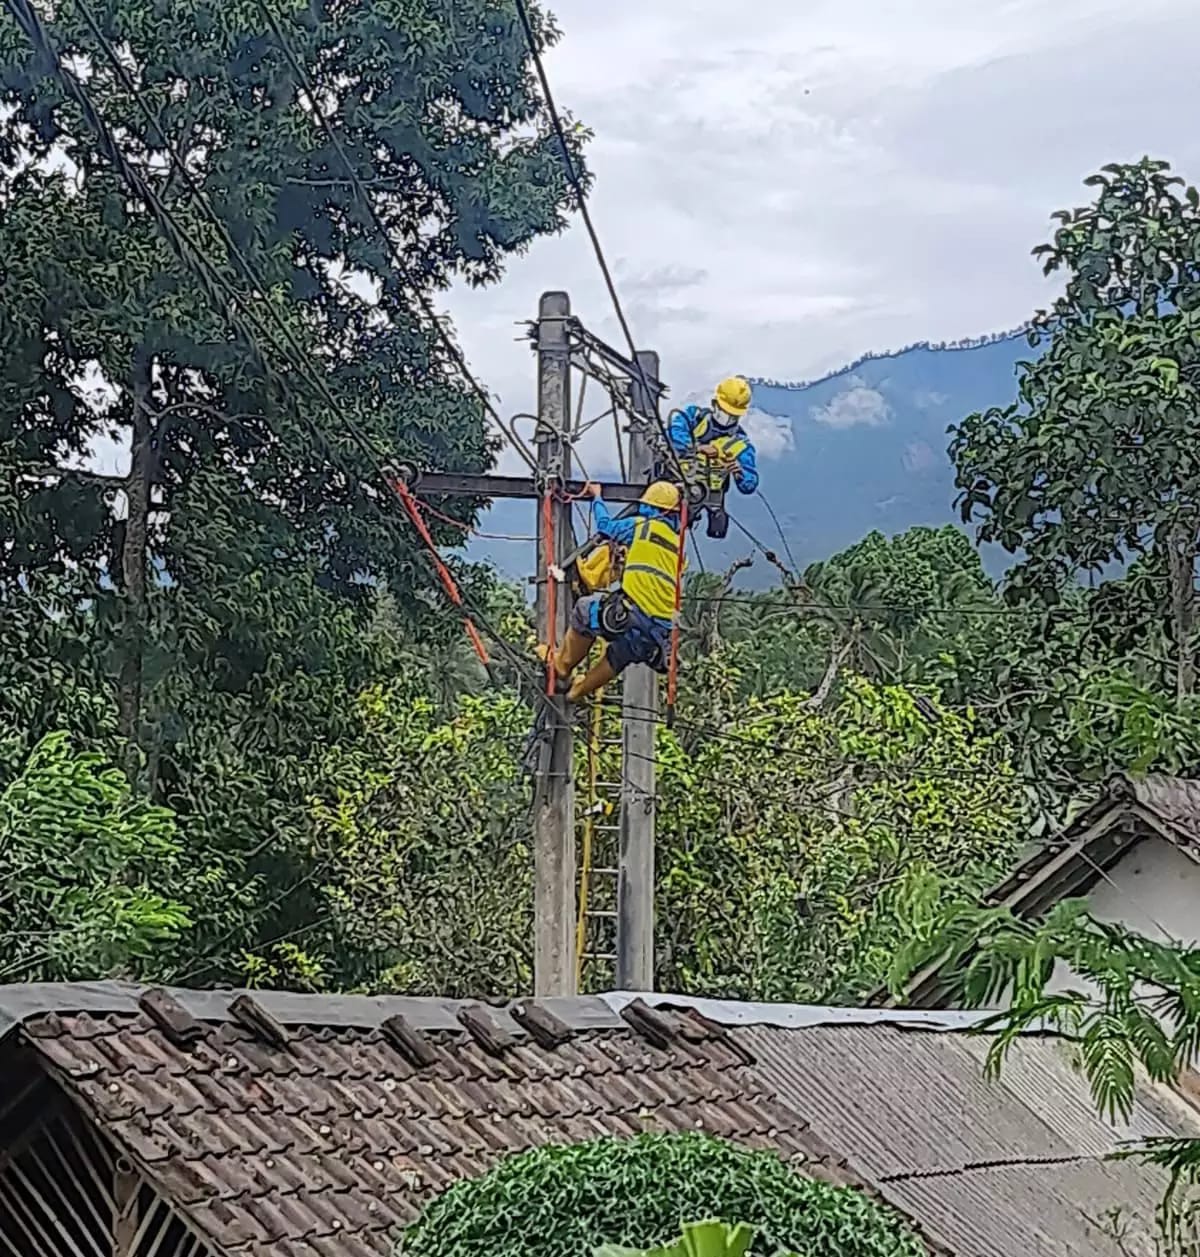 Pasca Erupsi Gunung Semeru: Tim Inspektur Ketenagalistrikan Diterjunkan untuk Pulihkan Infrastruktur Ketenagalistrikan